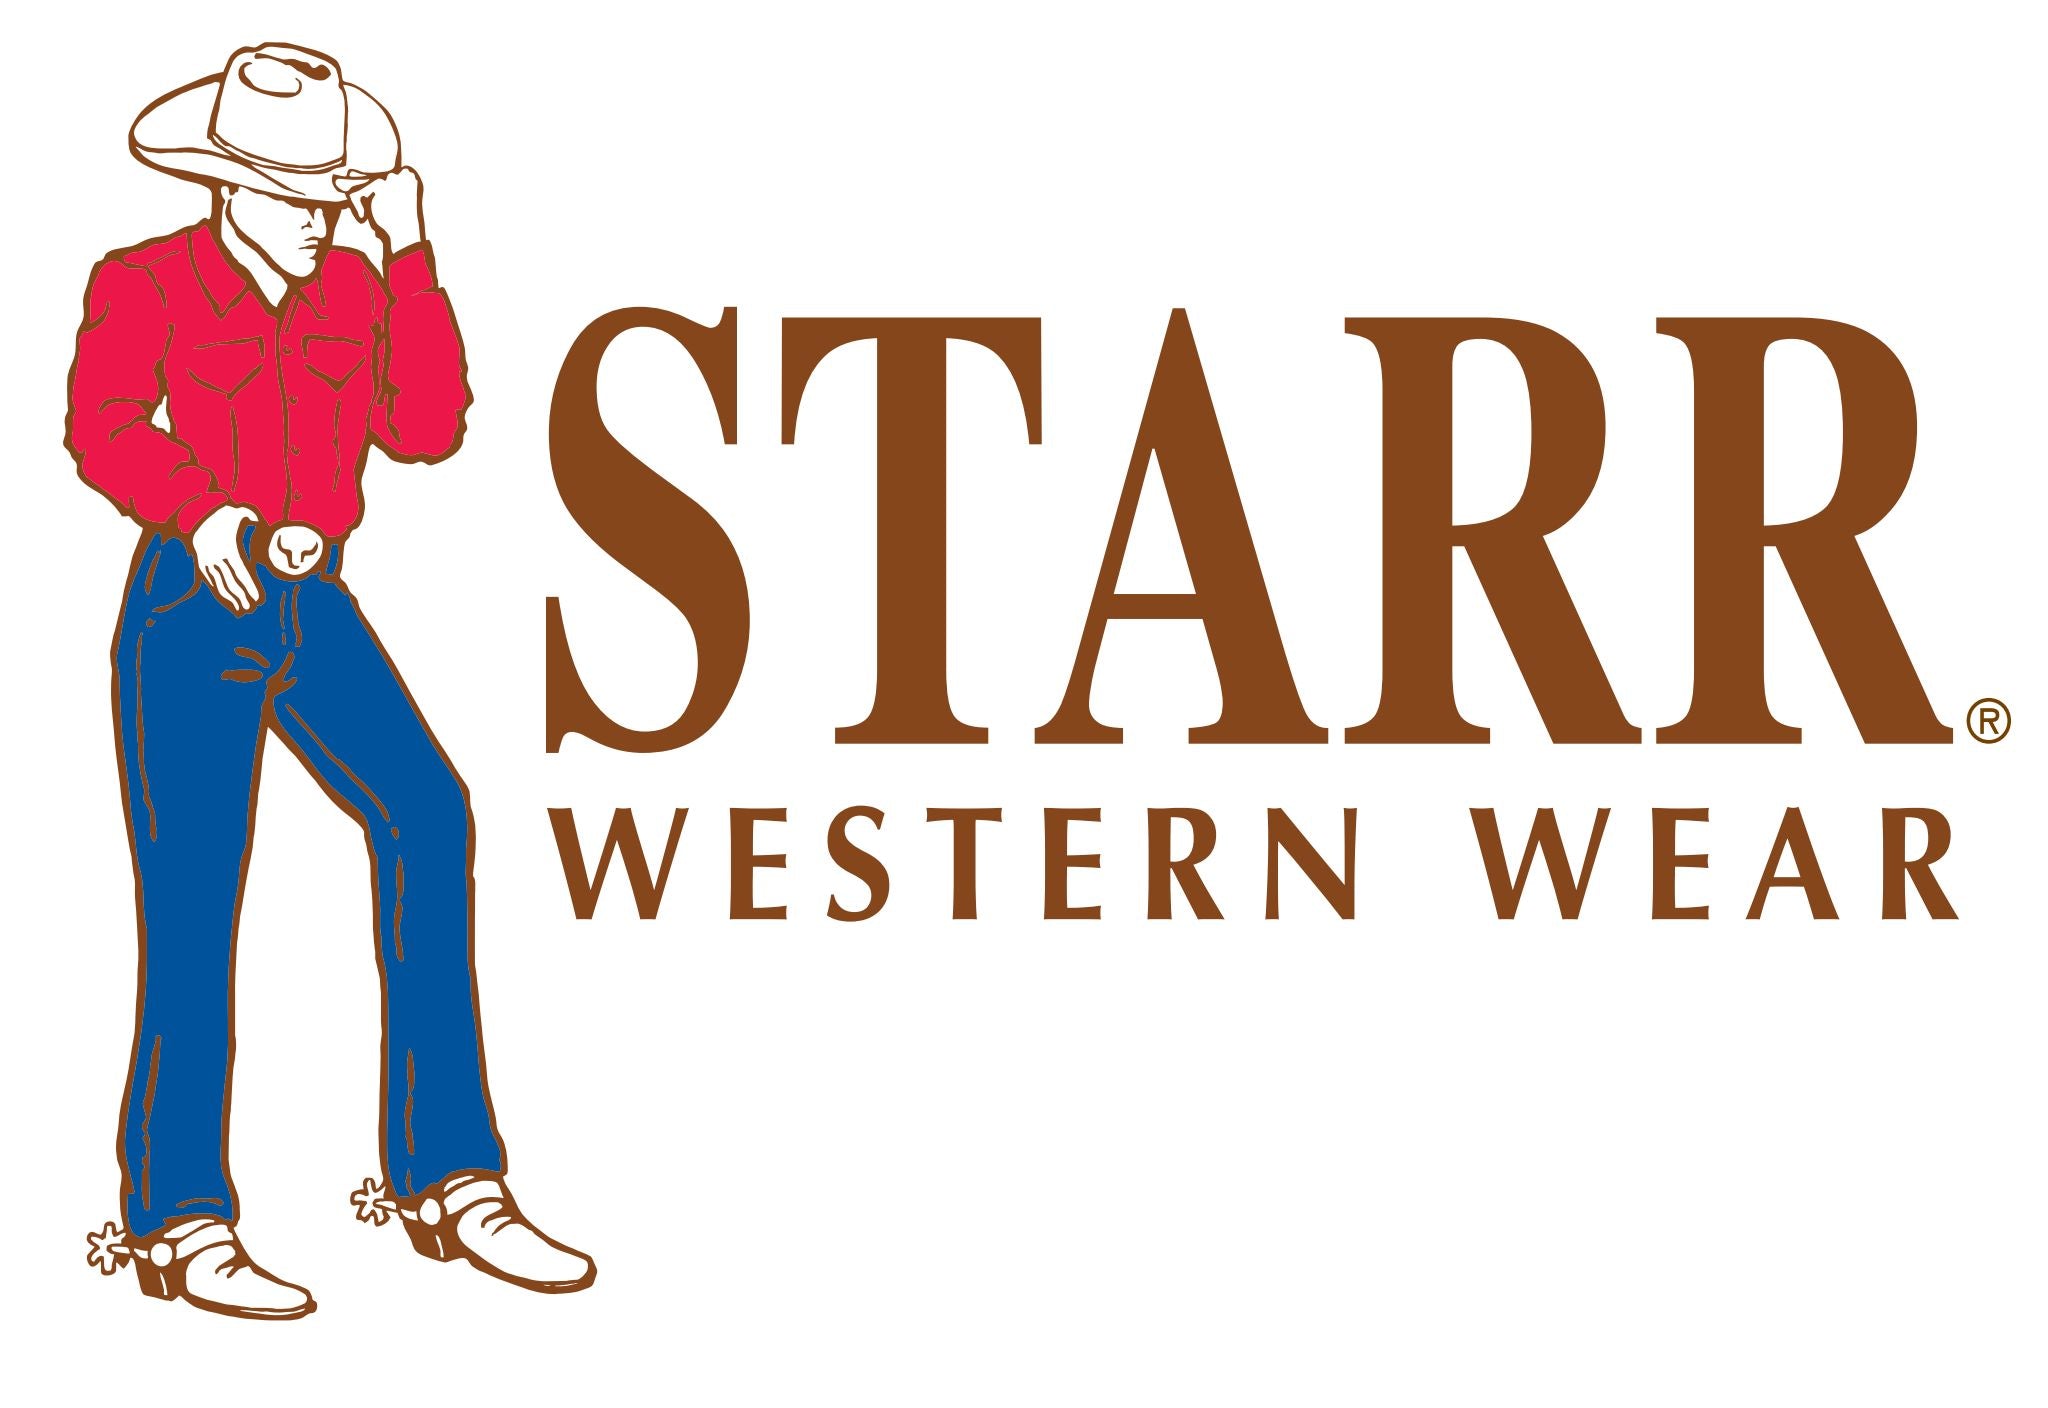 Western wear - Wikipedia